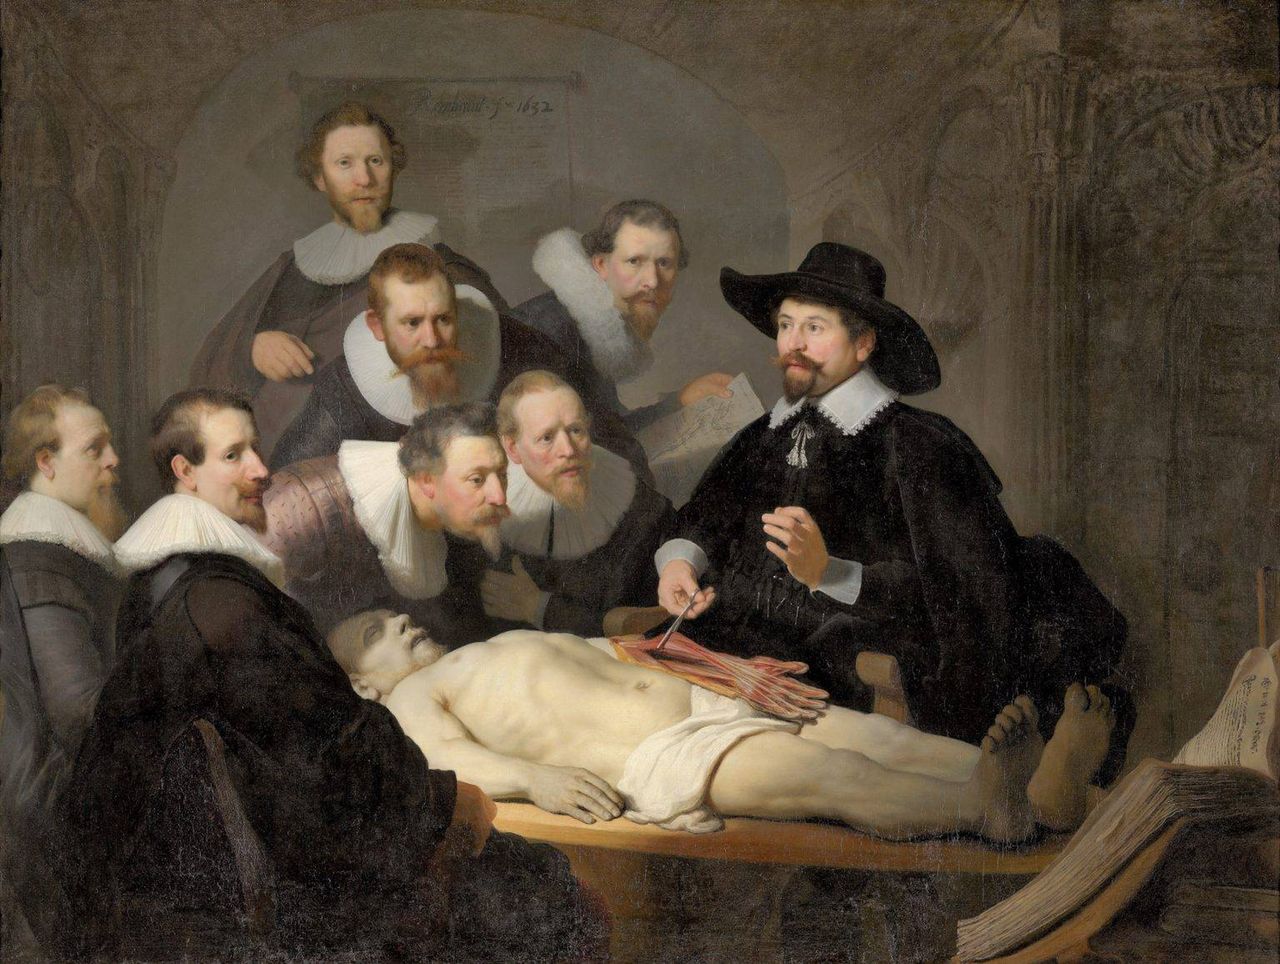 Najsłynniejszym zobrazowaniem renesansowych sekcji zwłok jest słynne dzieło Rembrandta Lekcja anatomii doktora Nicholasa Tulpa.